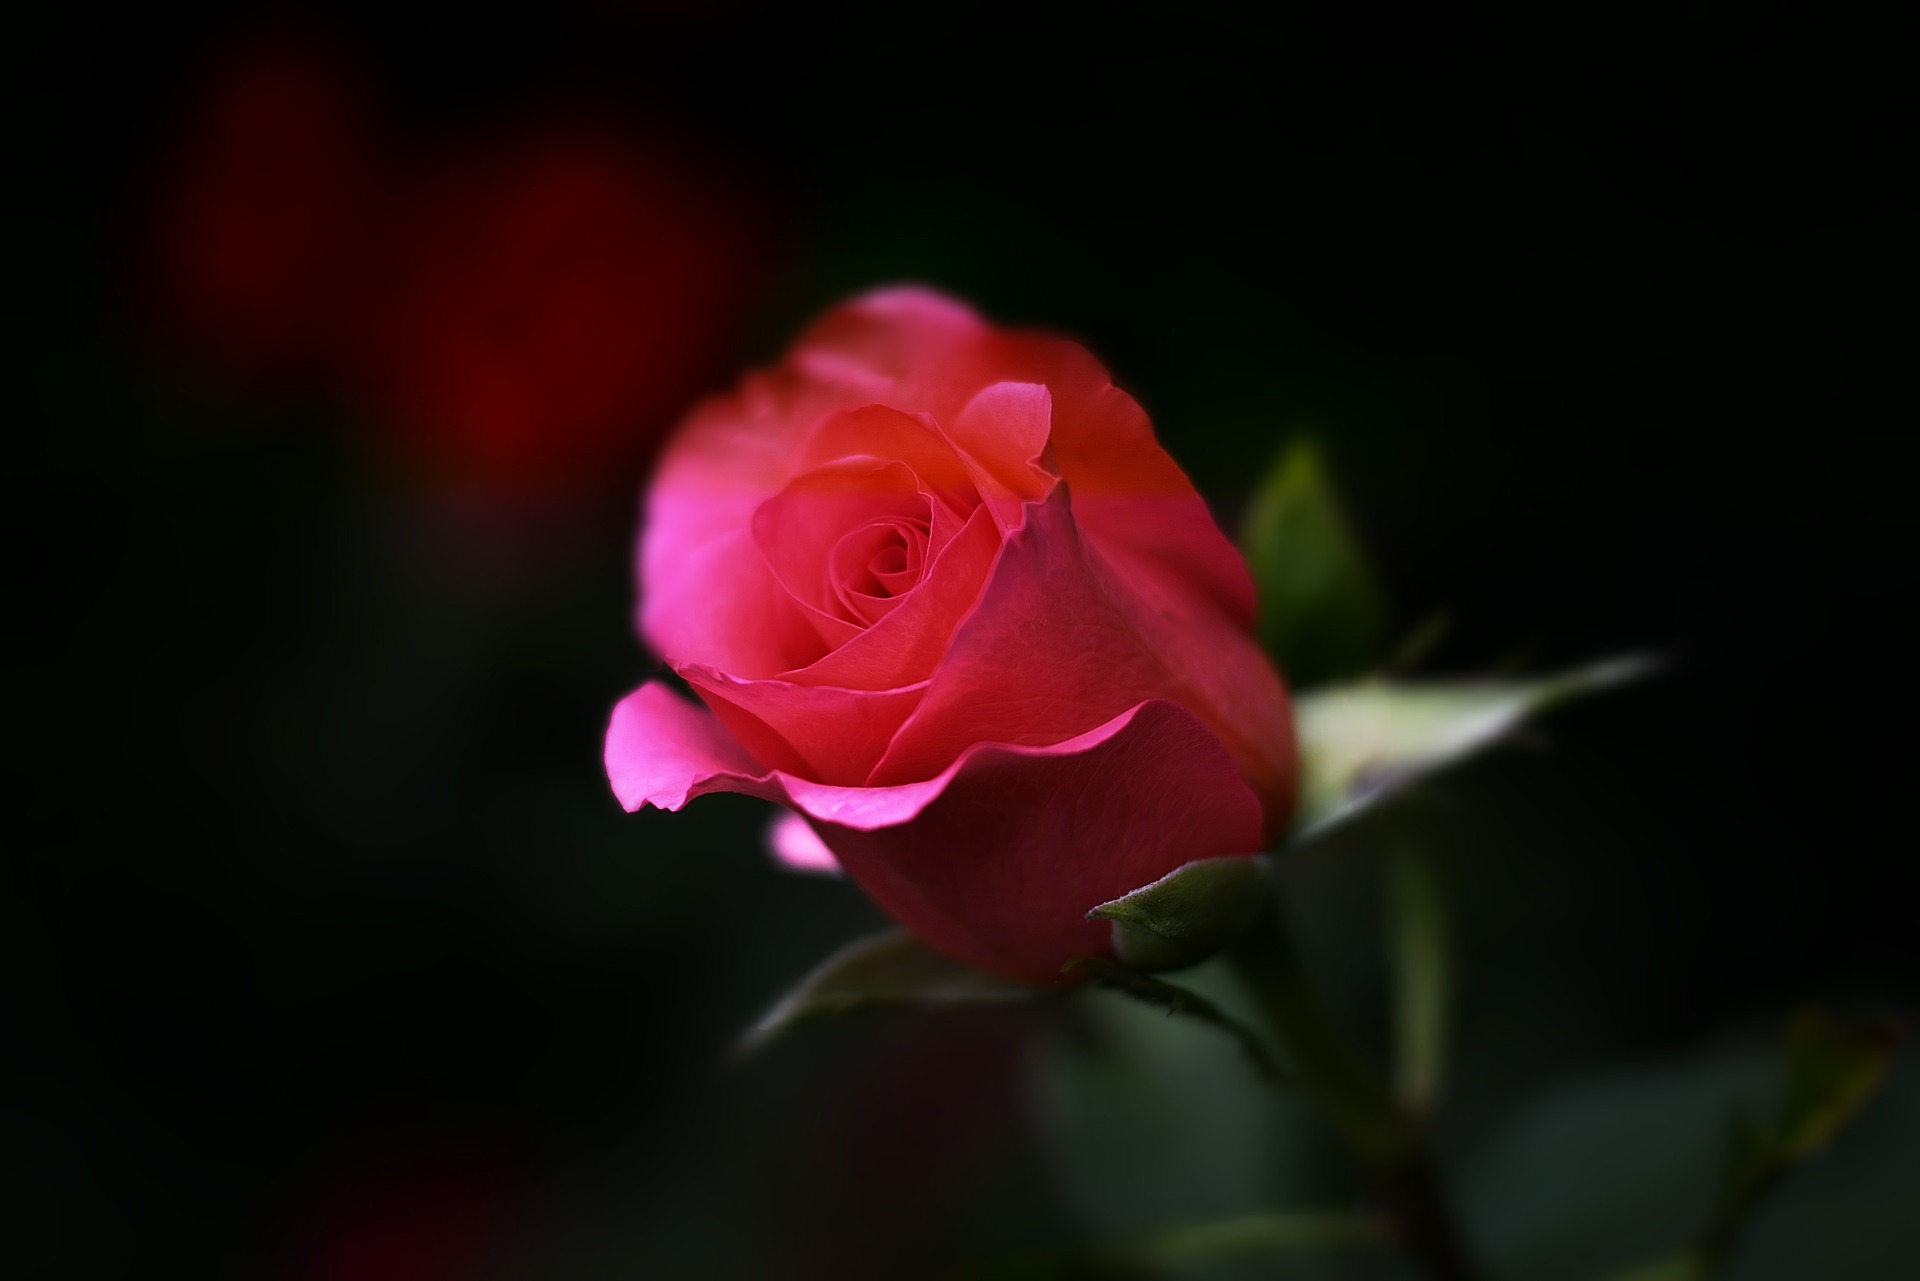 Rose (c) www.pixabay.com